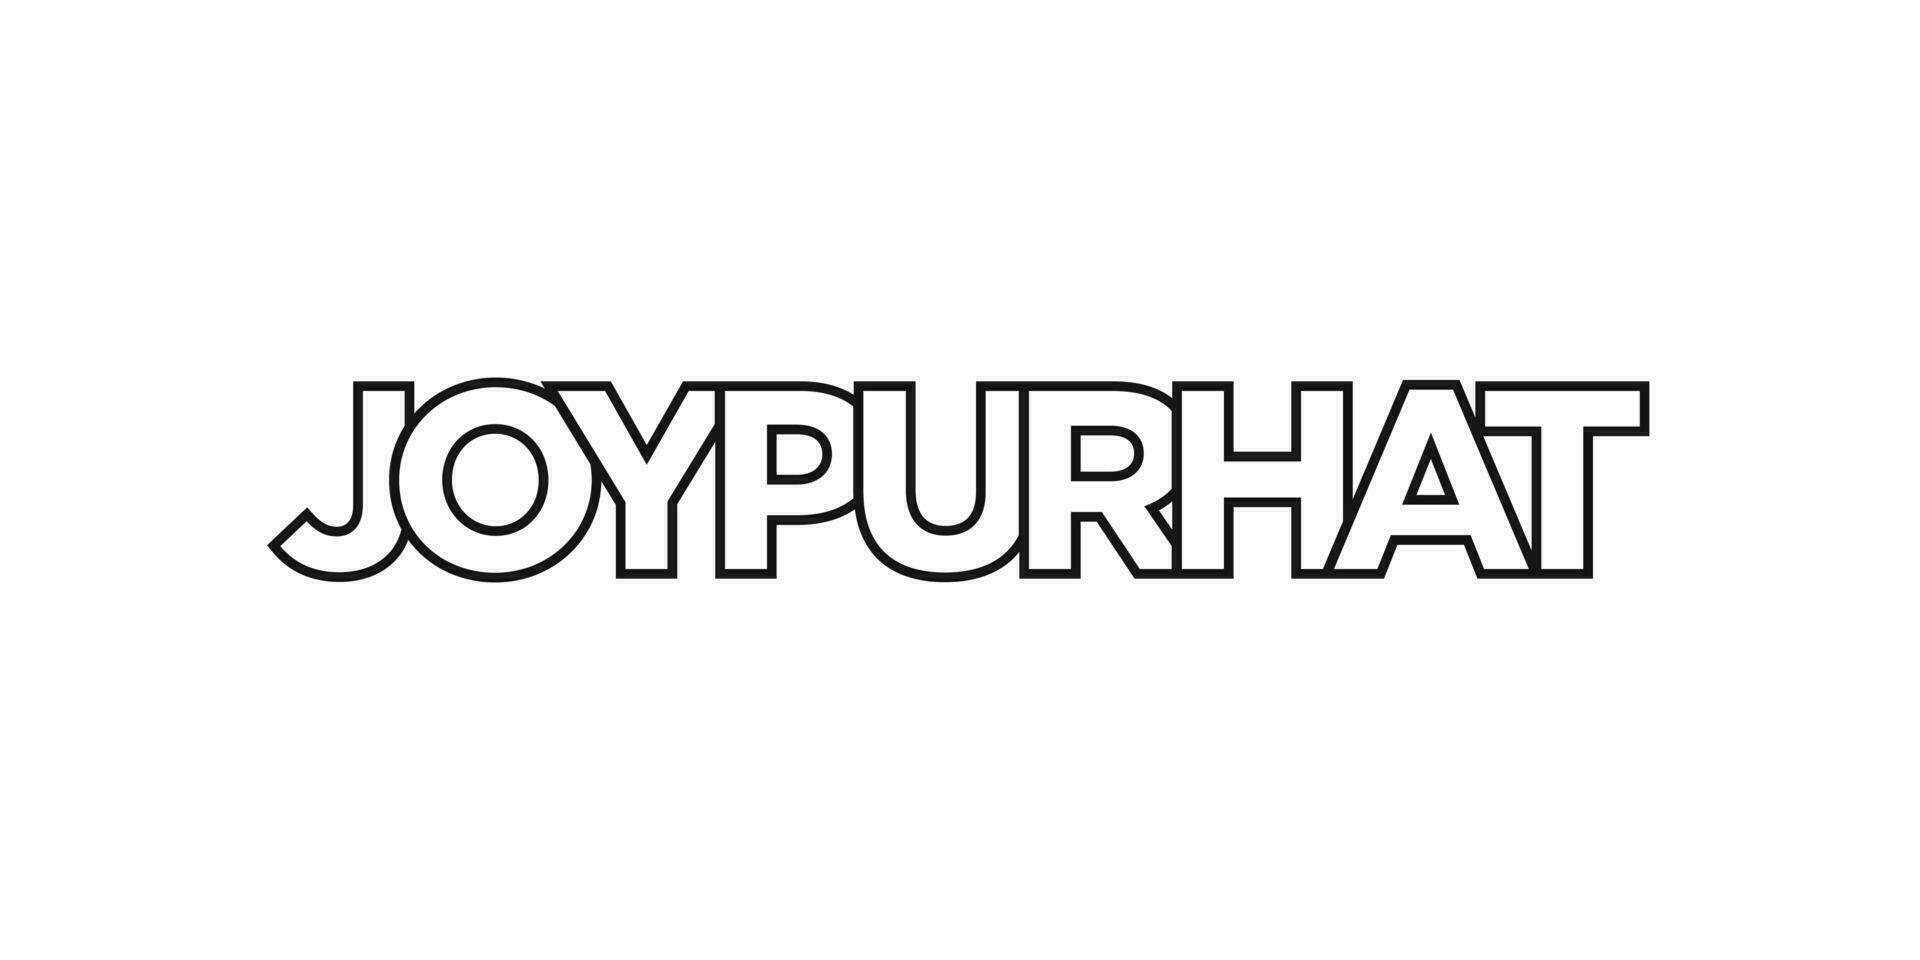 joypurhat dans le bangladesh emblème. le conception Caractéristiques une géométrique style, vecteur illustration avec audacieux typographie dans une moderne Police de caractère. le graphique slogan caractères.